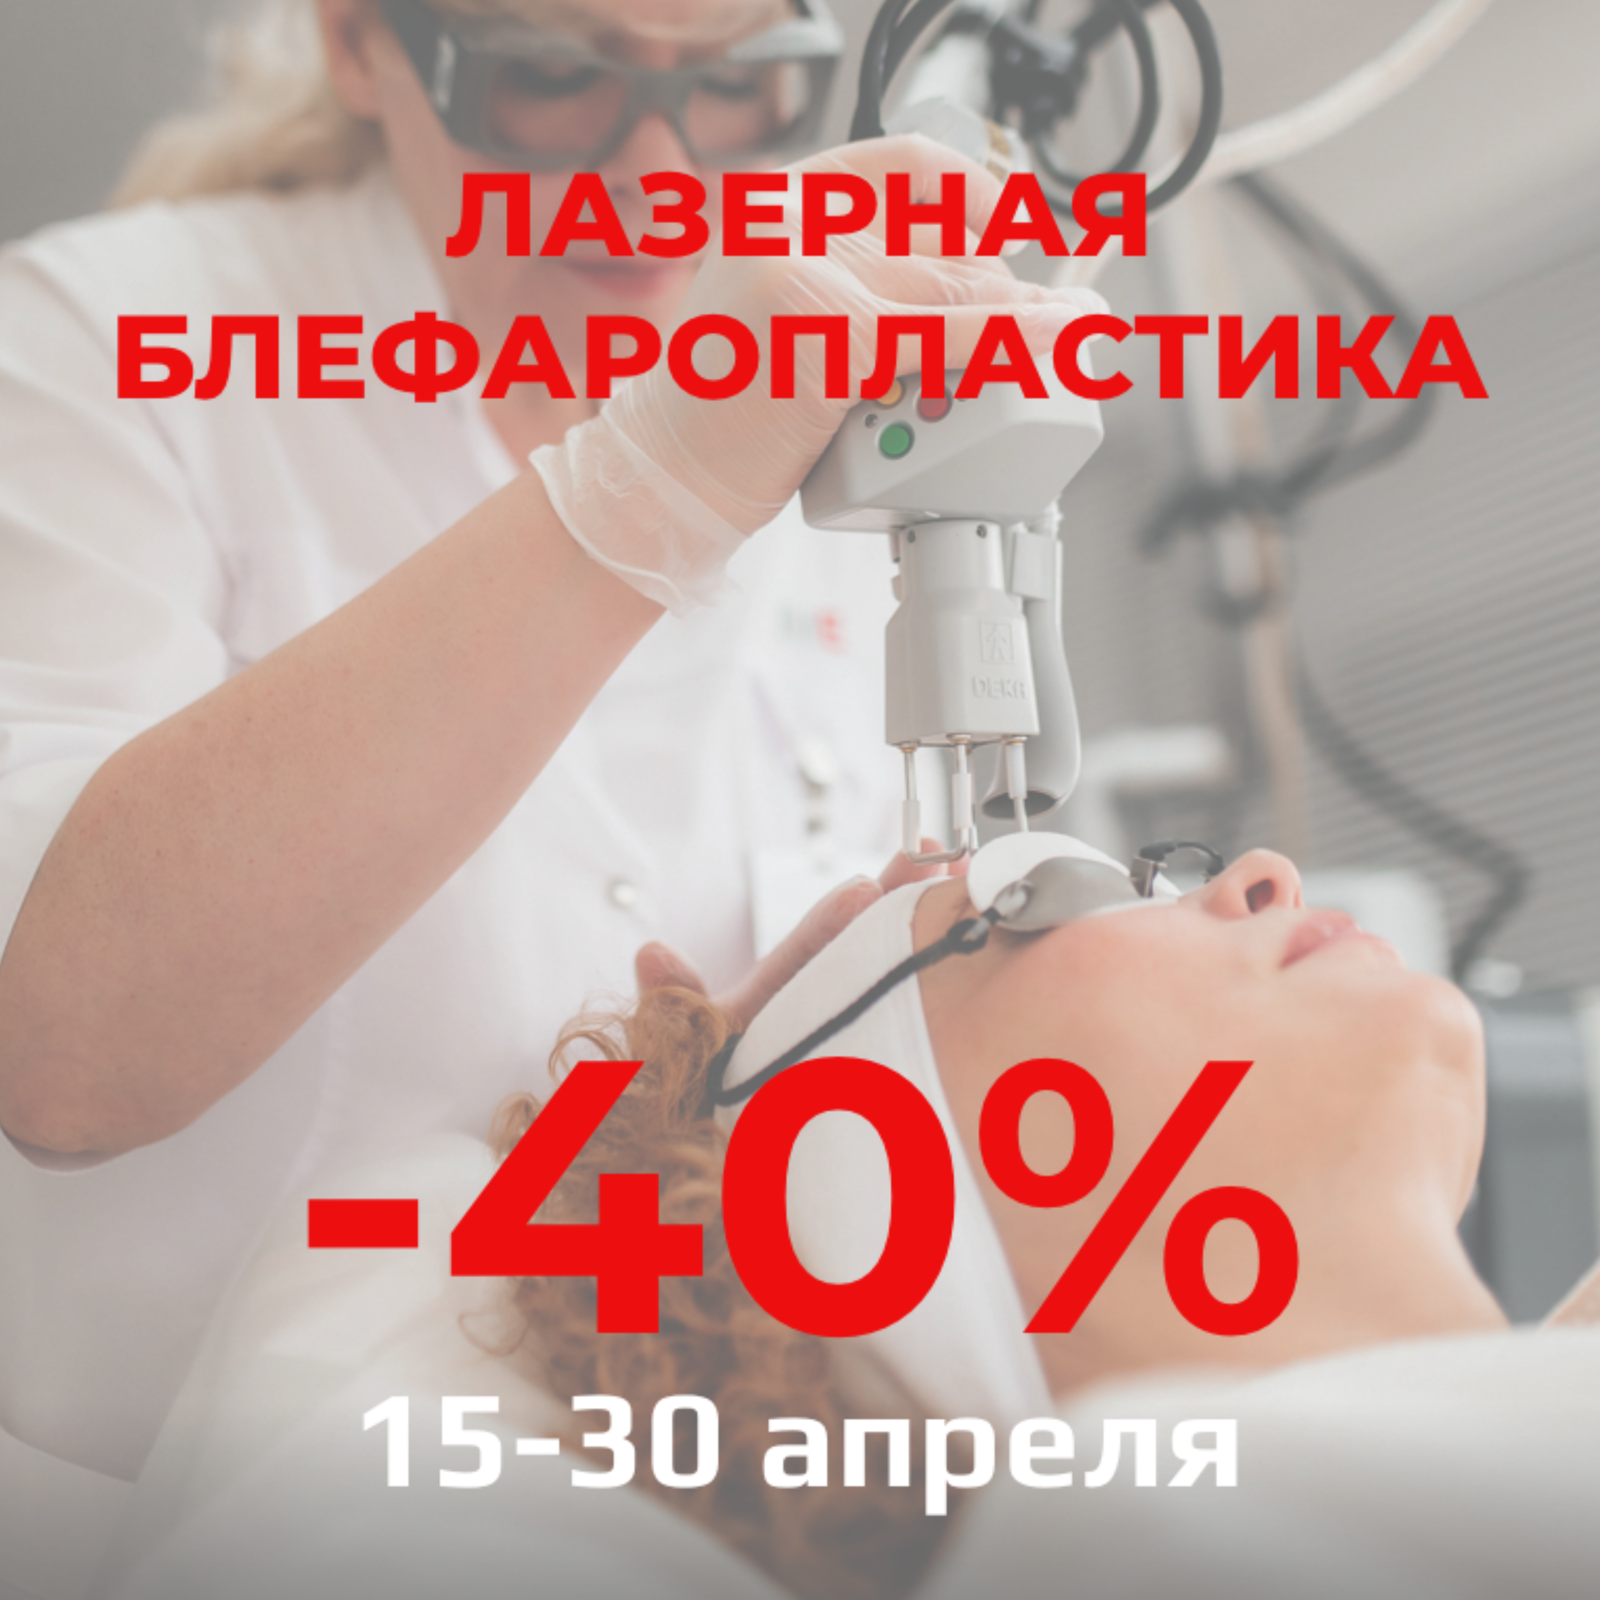    -40%